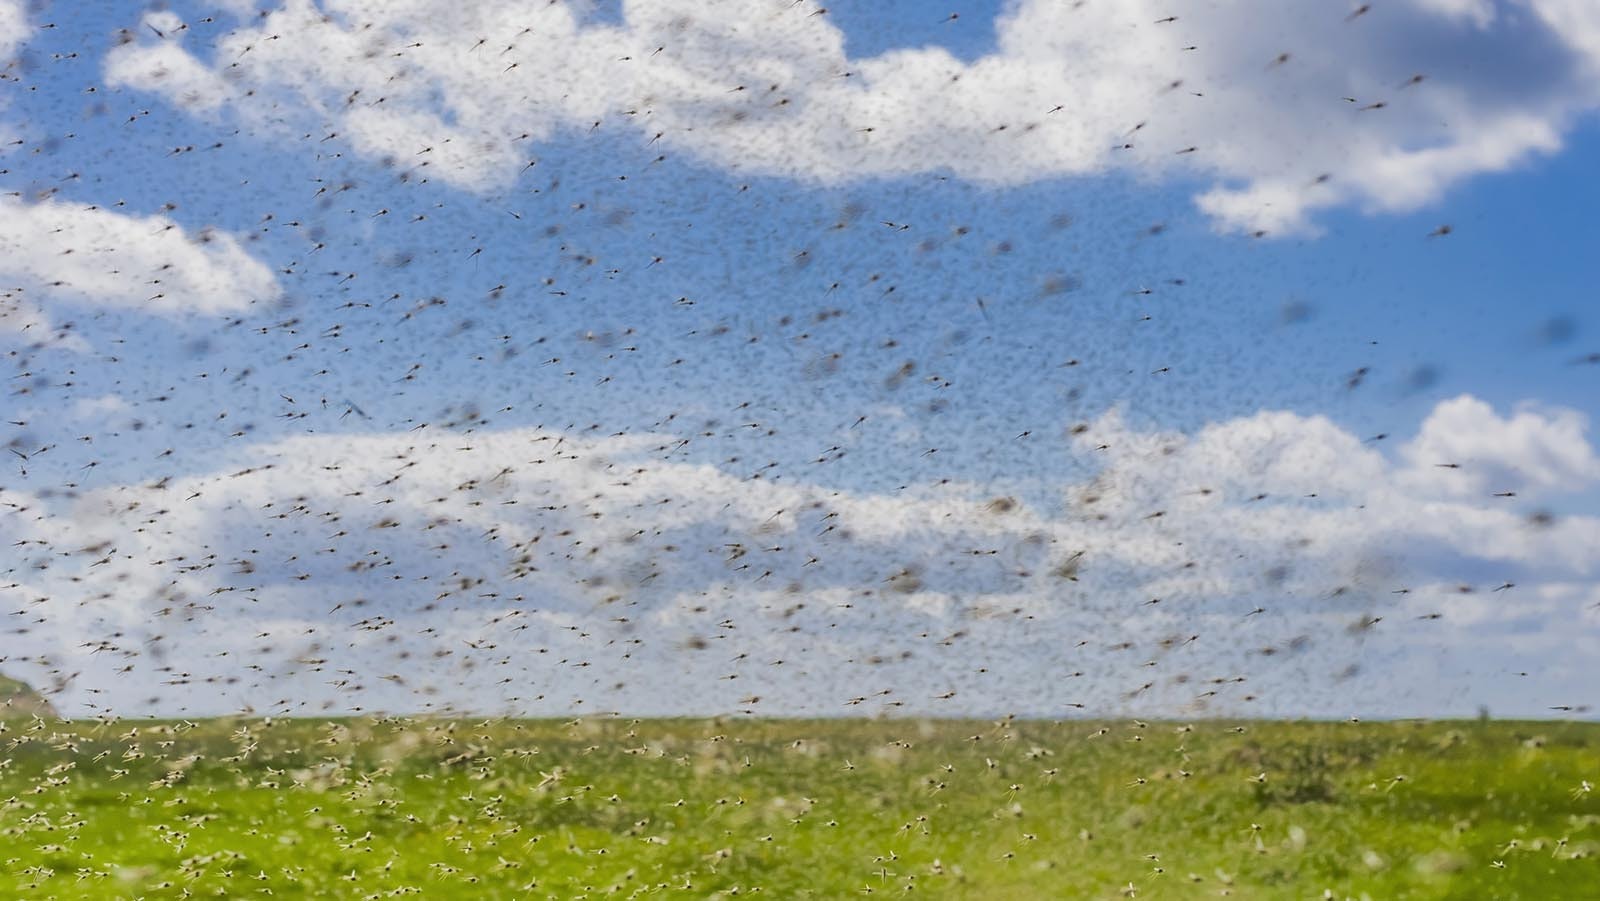 Mosquito swarm 6 19 23